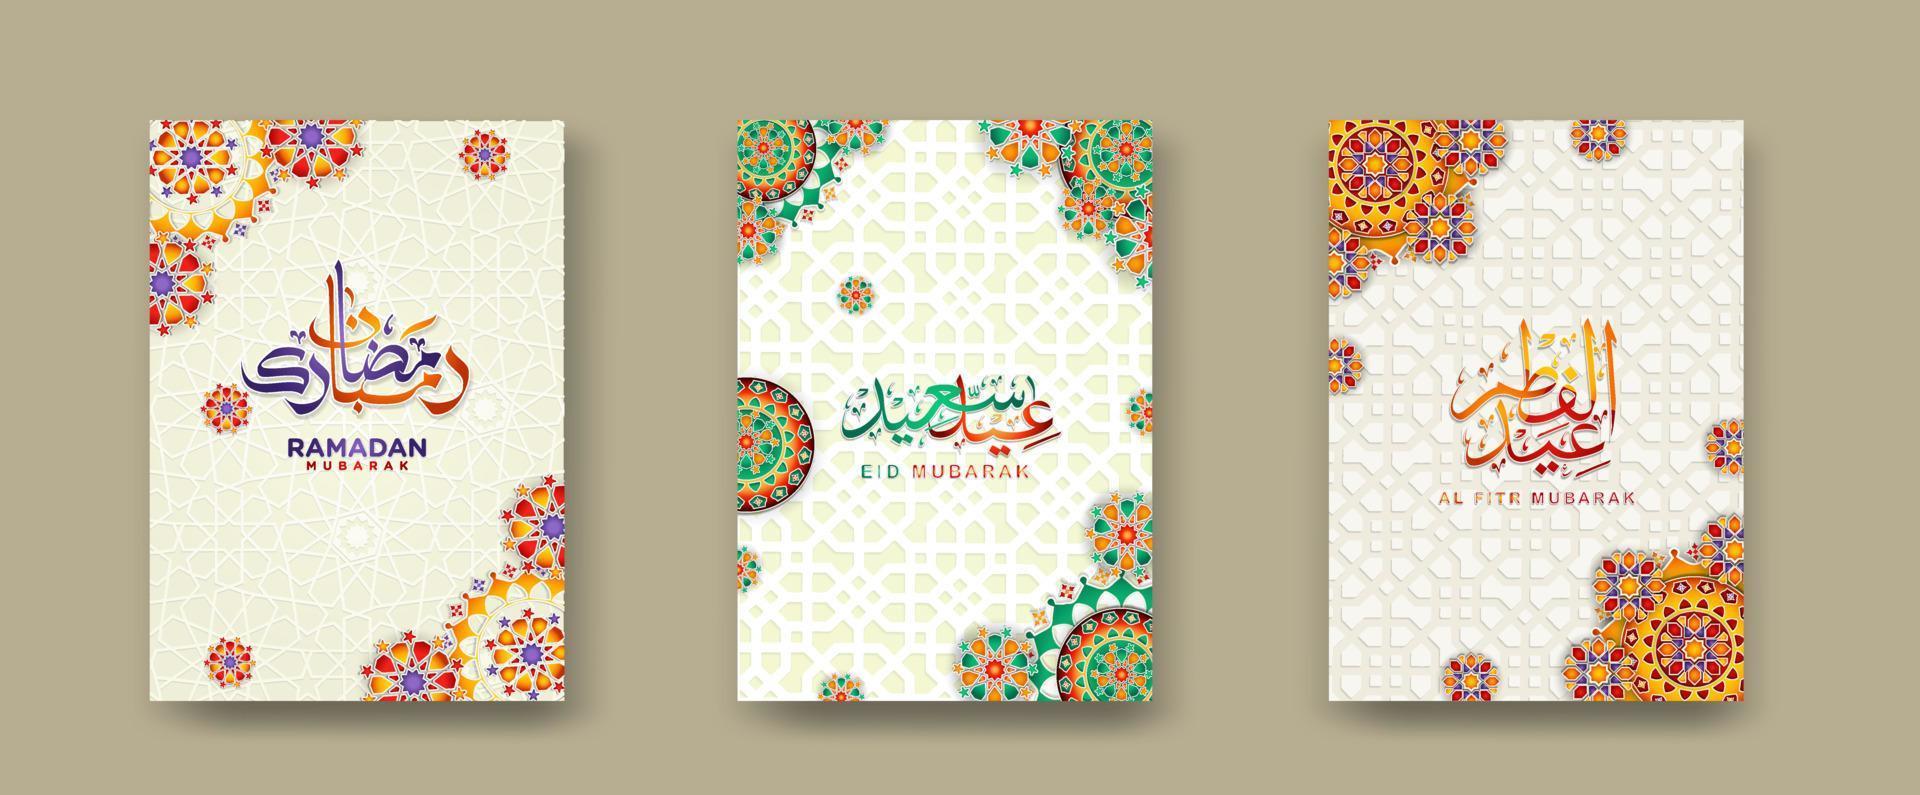 uppsättning islamic omslag bakgrund mall för ramadan händelse och eid al fitr händelse och Övrig användare.vektor illustration. vektor